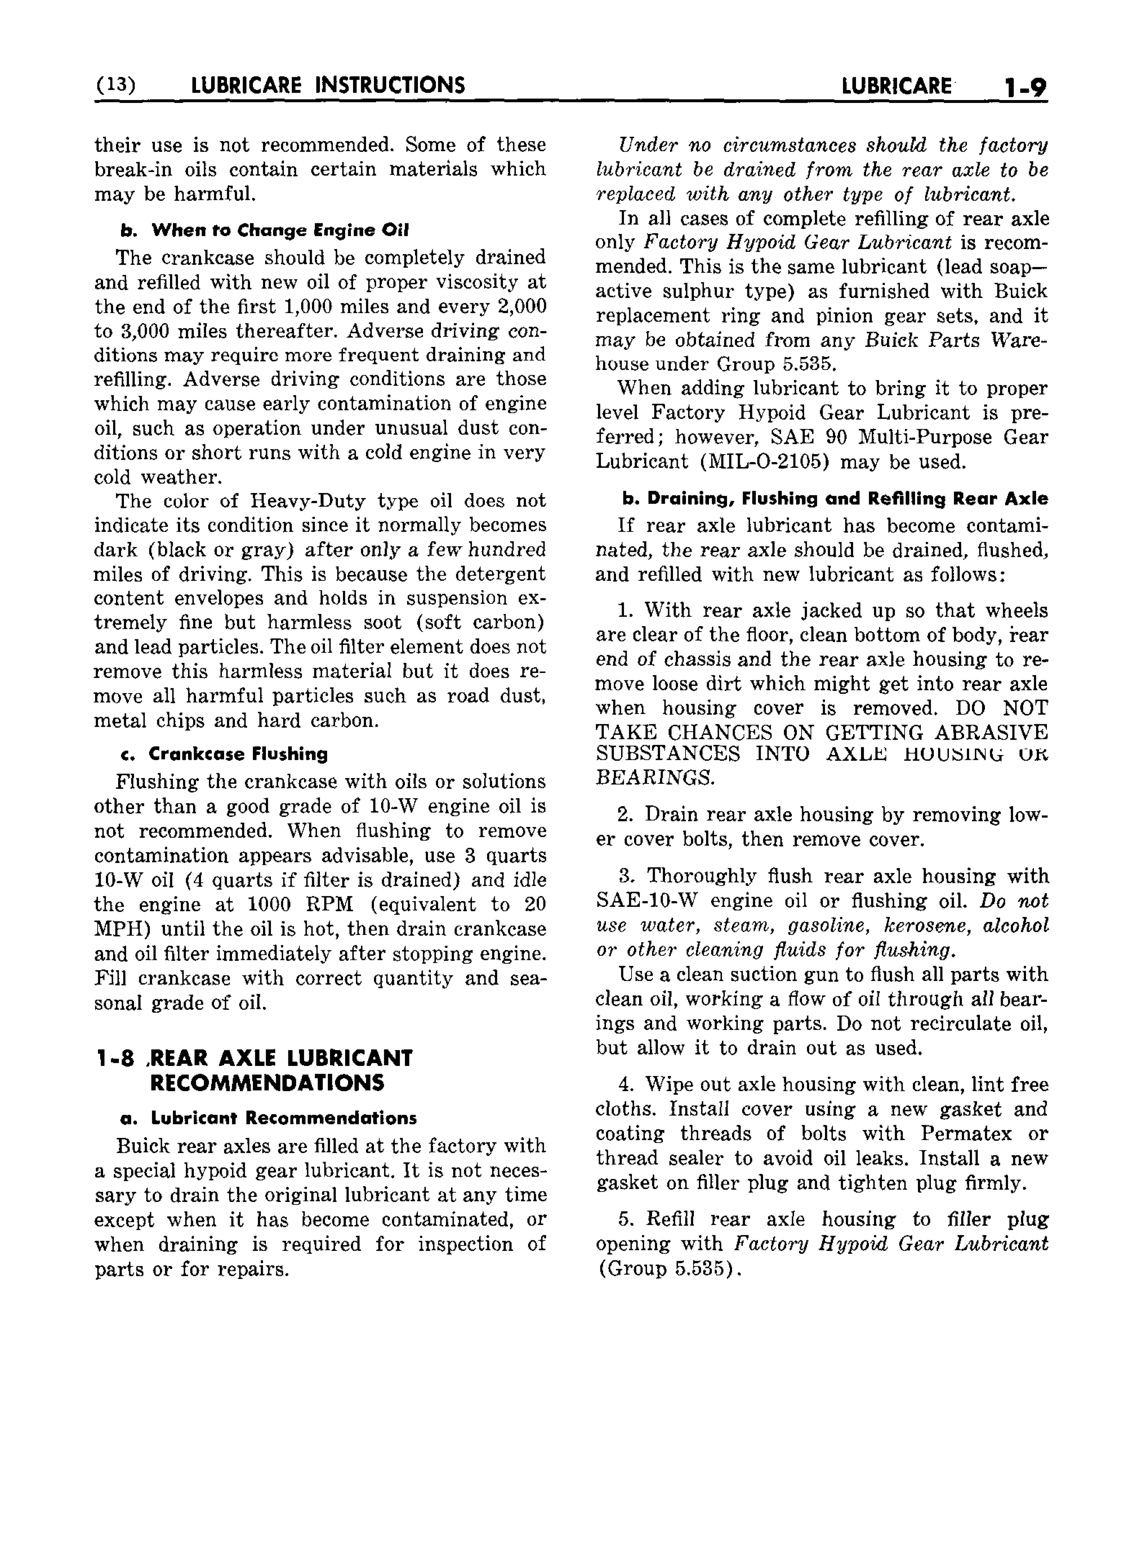 n_02 1953 Buick Shop Manual - Lubricare-009-009.jpg